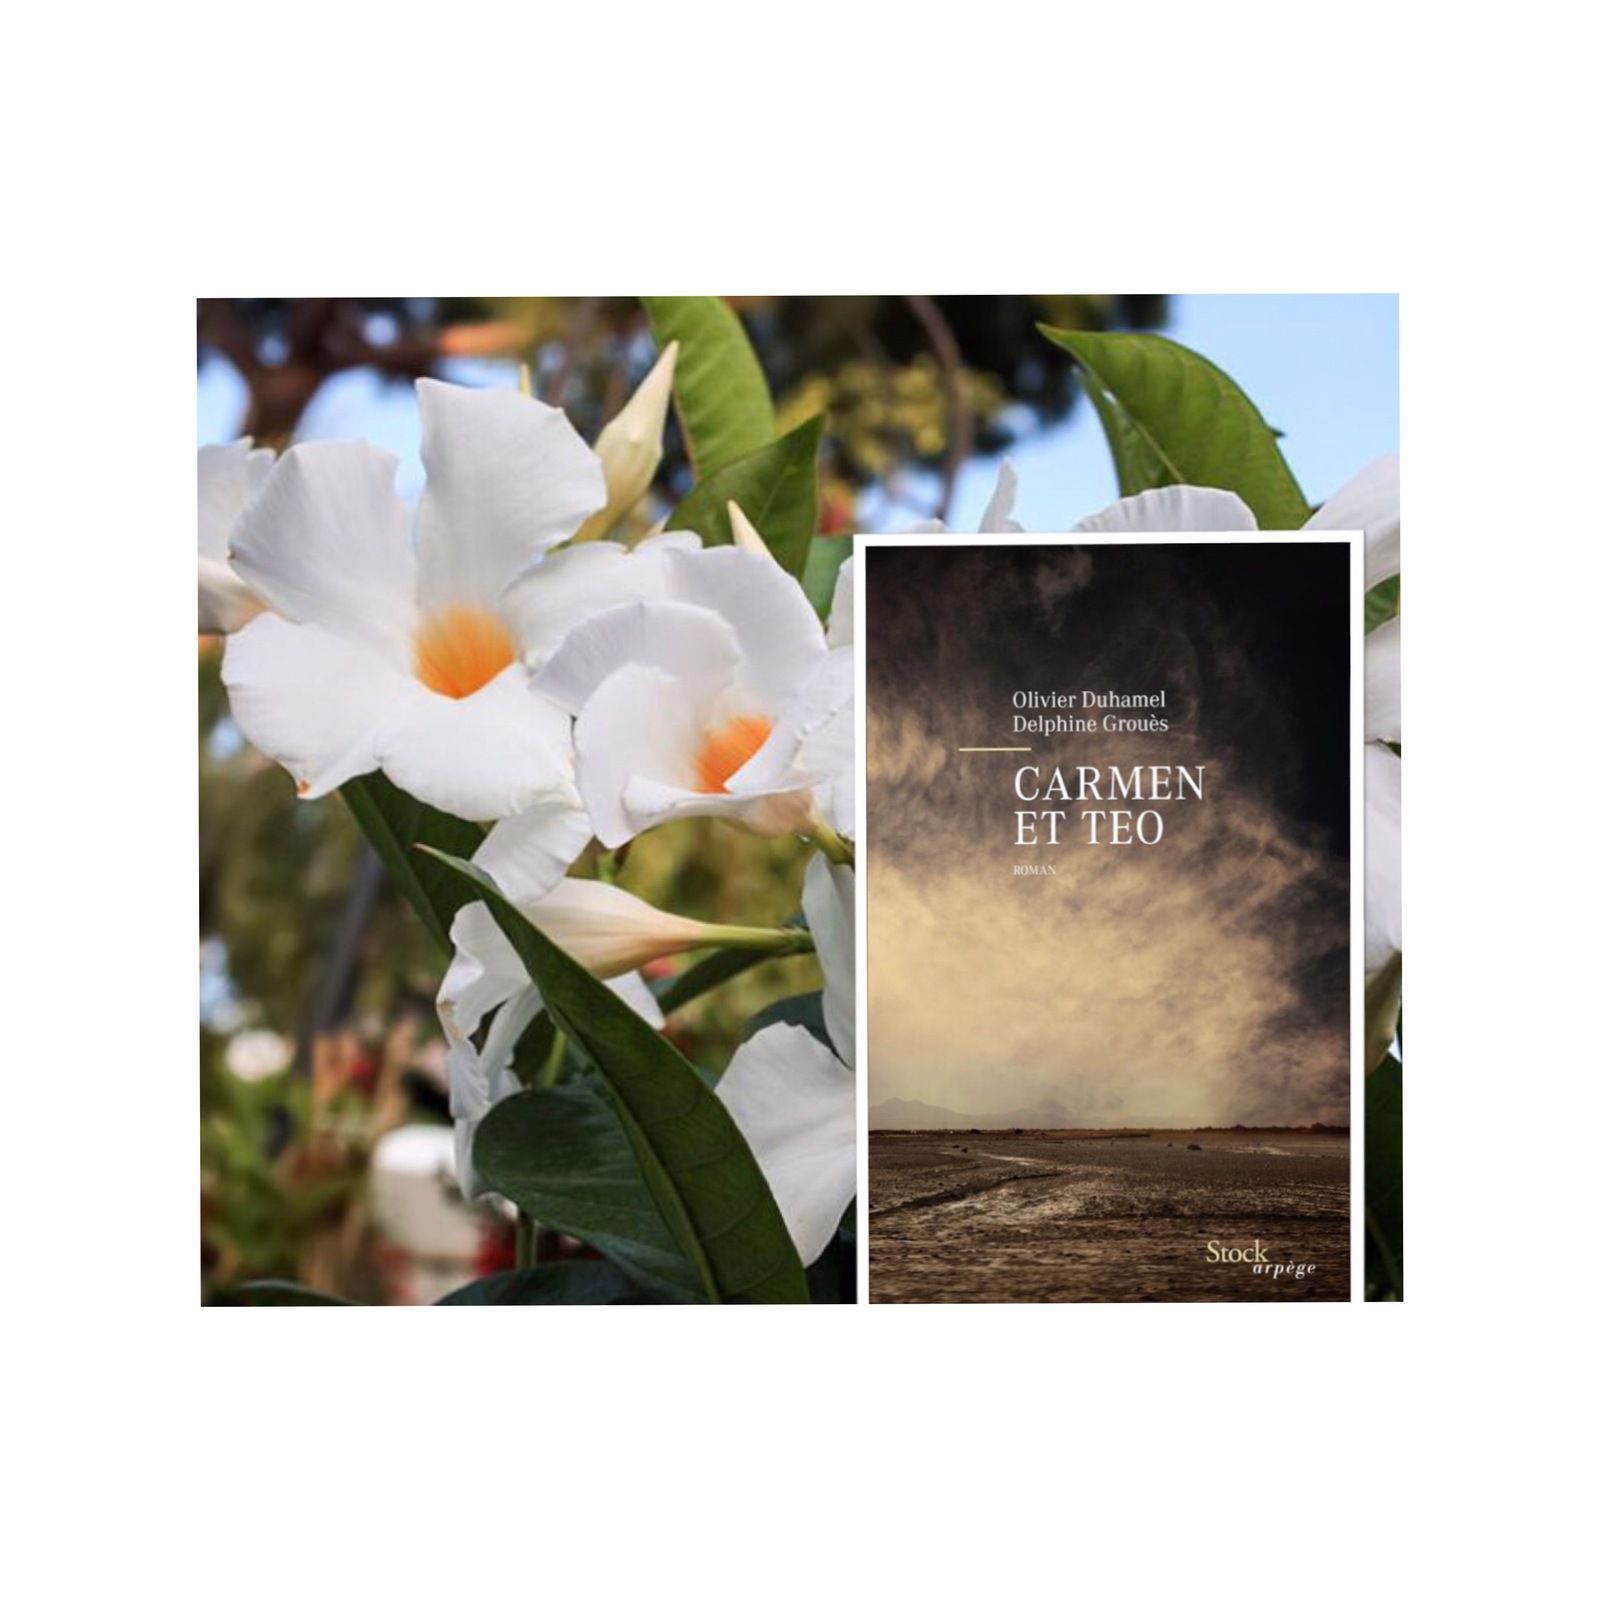 La première de couverture du roman "Carmen et Teo" de Delphine GROUES et Olivier DUHAMEL. En arrière plan, un petit clin d'oeil, fleuri, avec un Mandevilla laxa, communément appelé Jasmin du Chili.